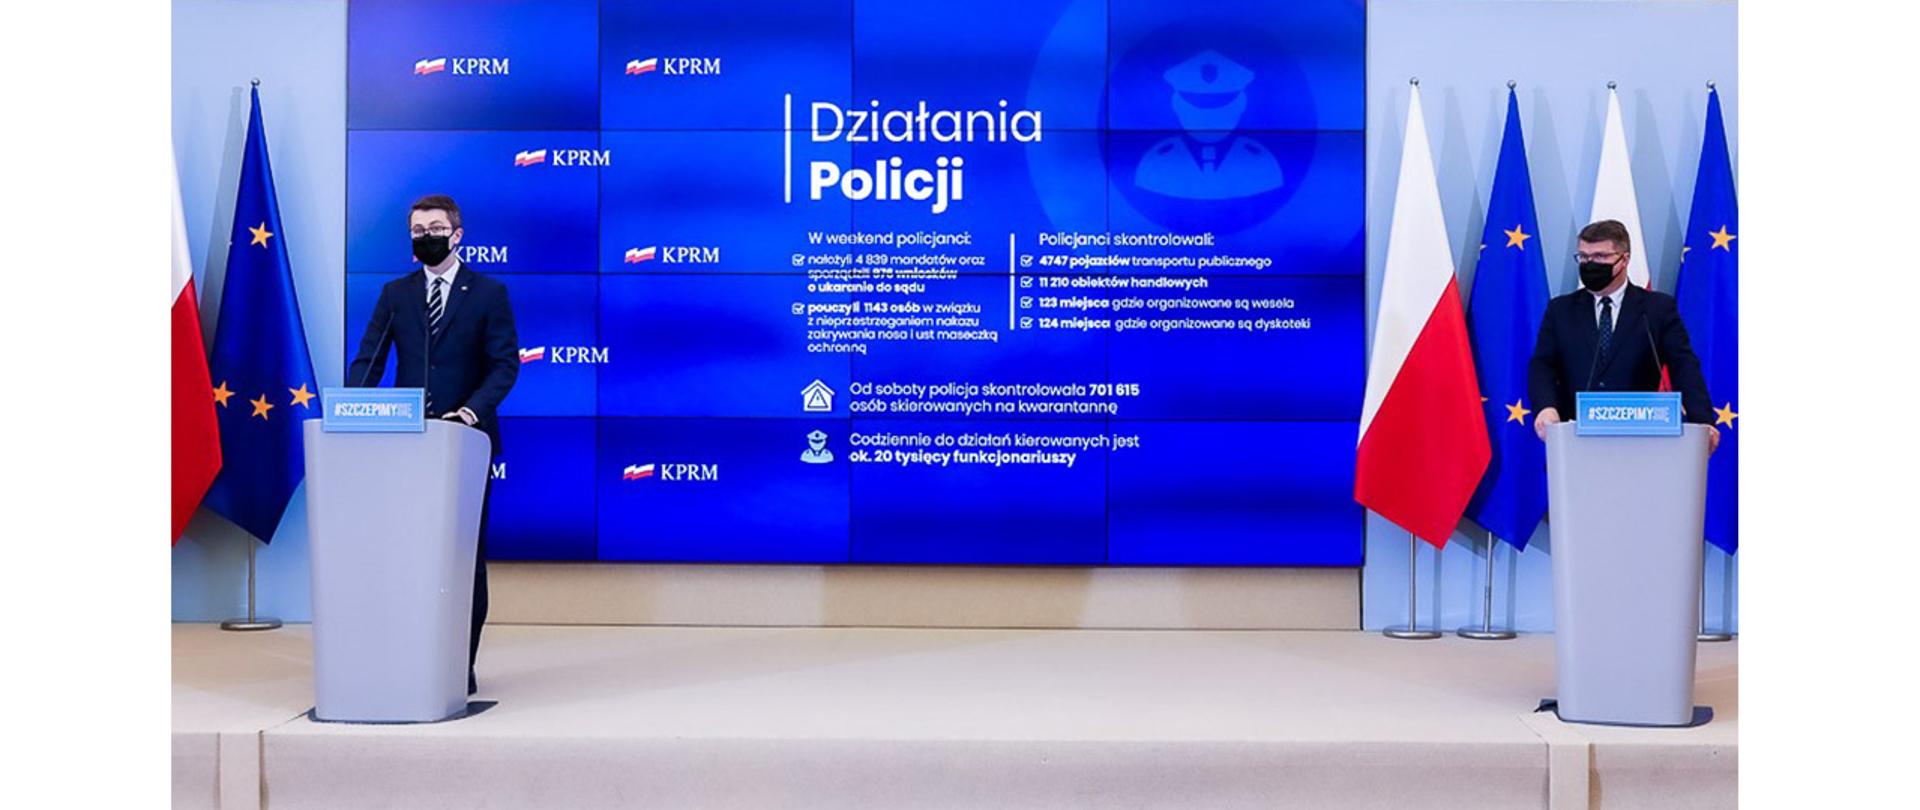 Na zdjęciu widać stojących za mównicami Piotra Mullera, rzecznika rządu i Macieja Wąsika wiceministra MSWiA. W tle widać ekran i flagi Polski i UE.